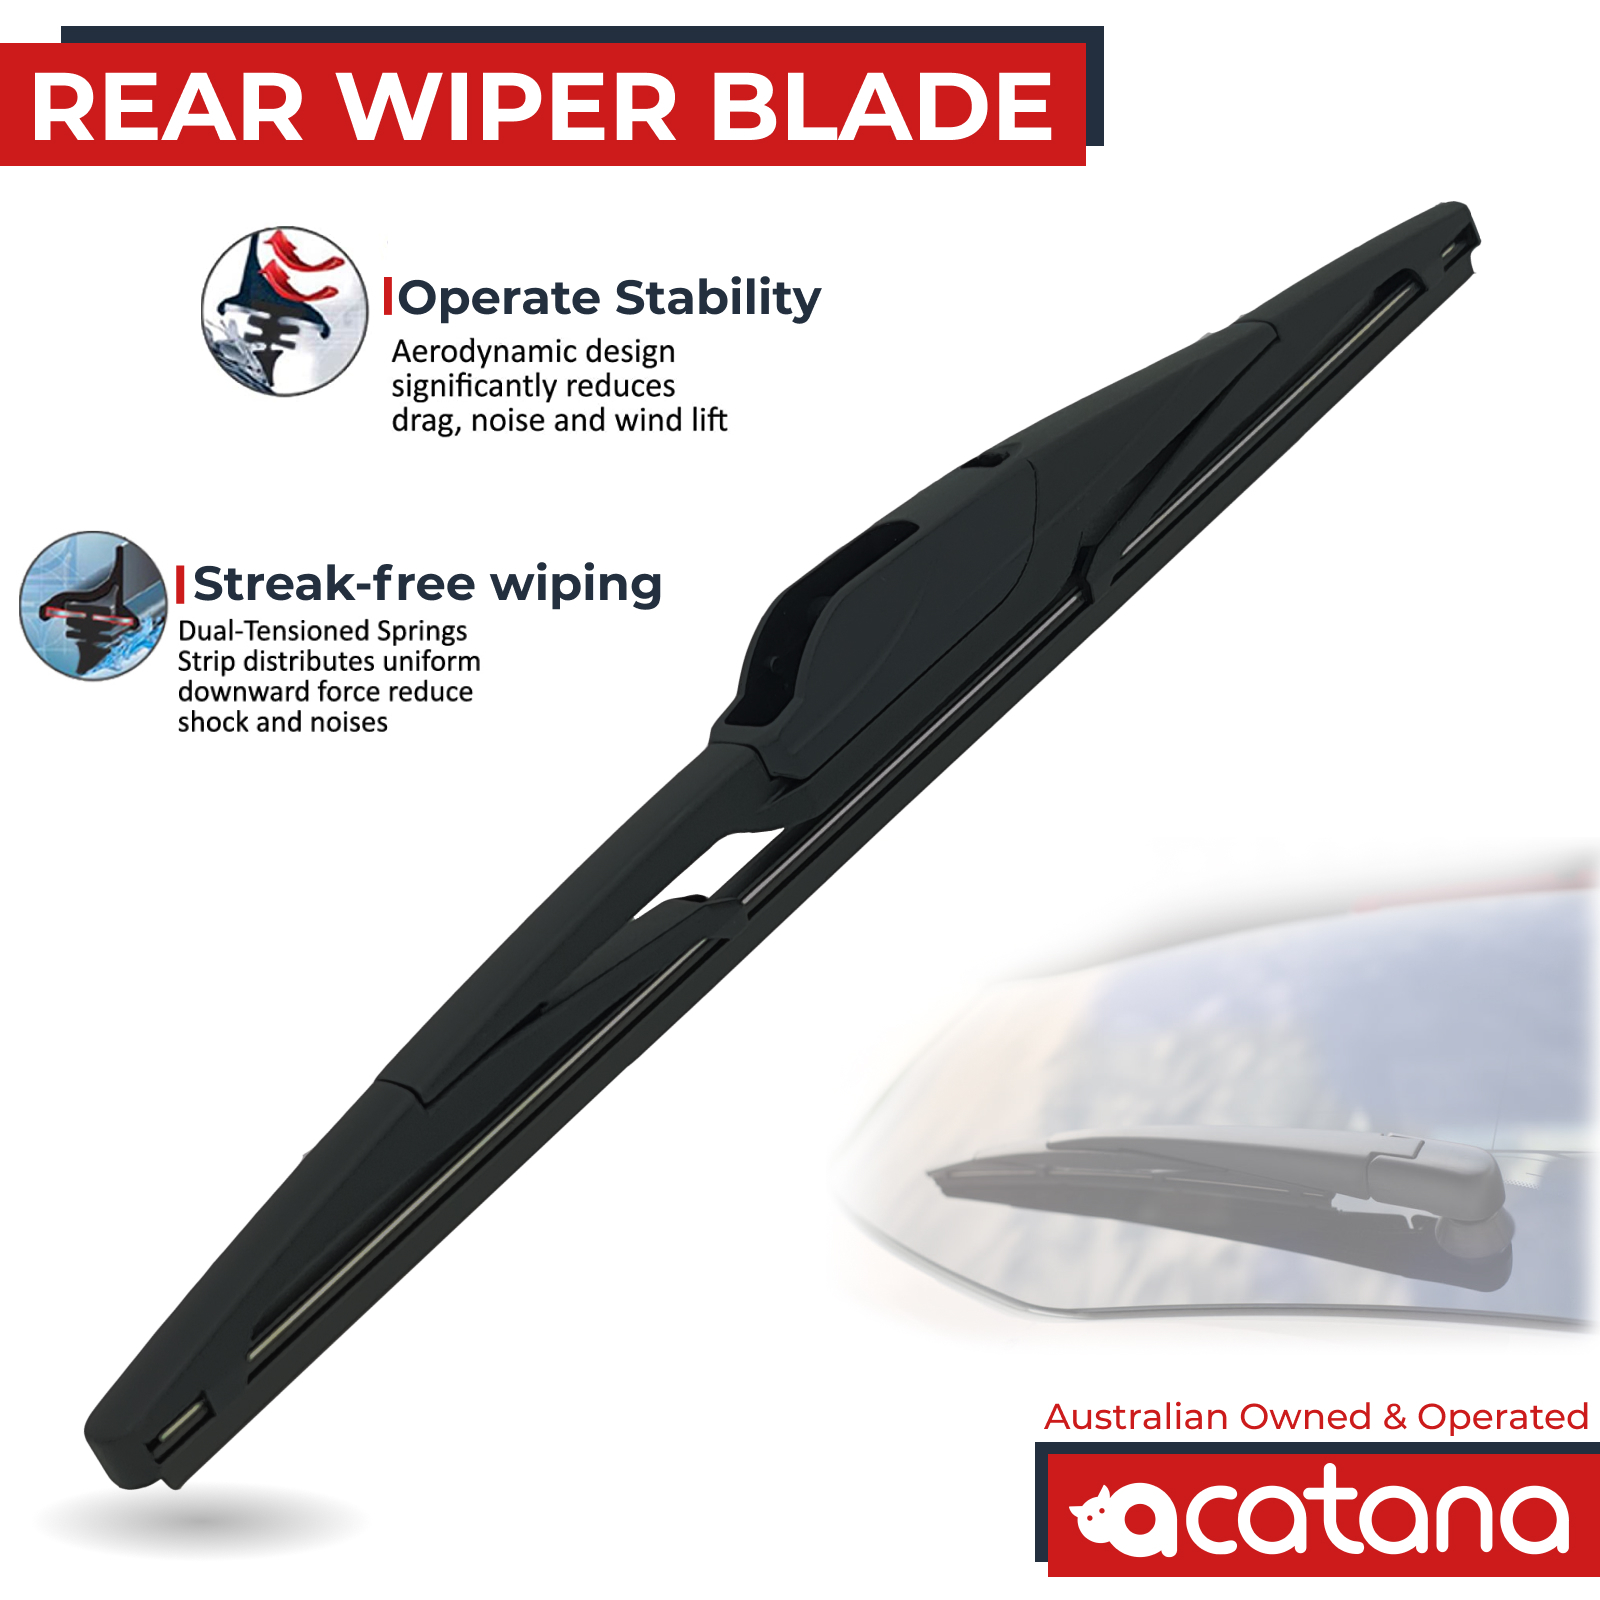 Rear Wiper Blade For Mazda 3 BM 2013 2014 2015 2016 Hatch 12" Tailgate | eBay 2015 Mazda 3 Rear Wiper Blade Size